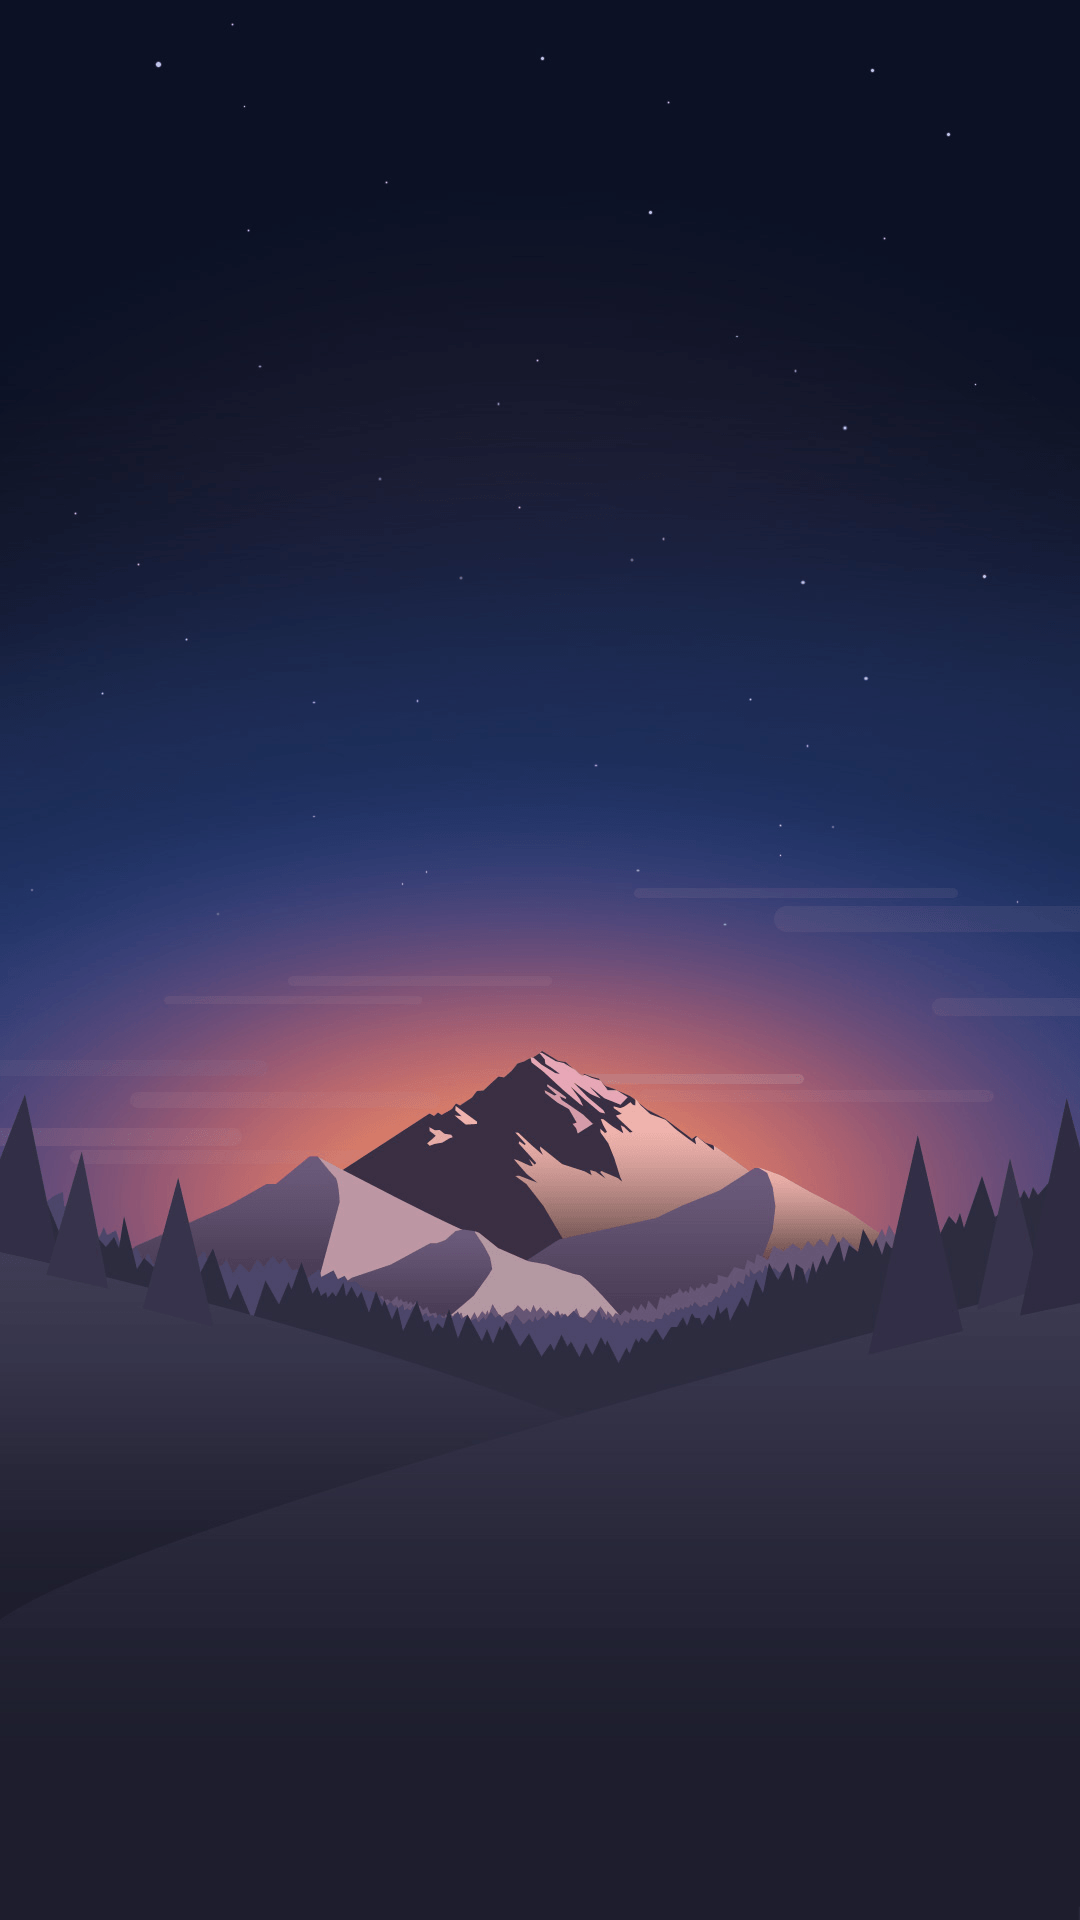 1080x1920 Núi trong đêm.  Nhấn để xem phong cảnh trong material design iPhone